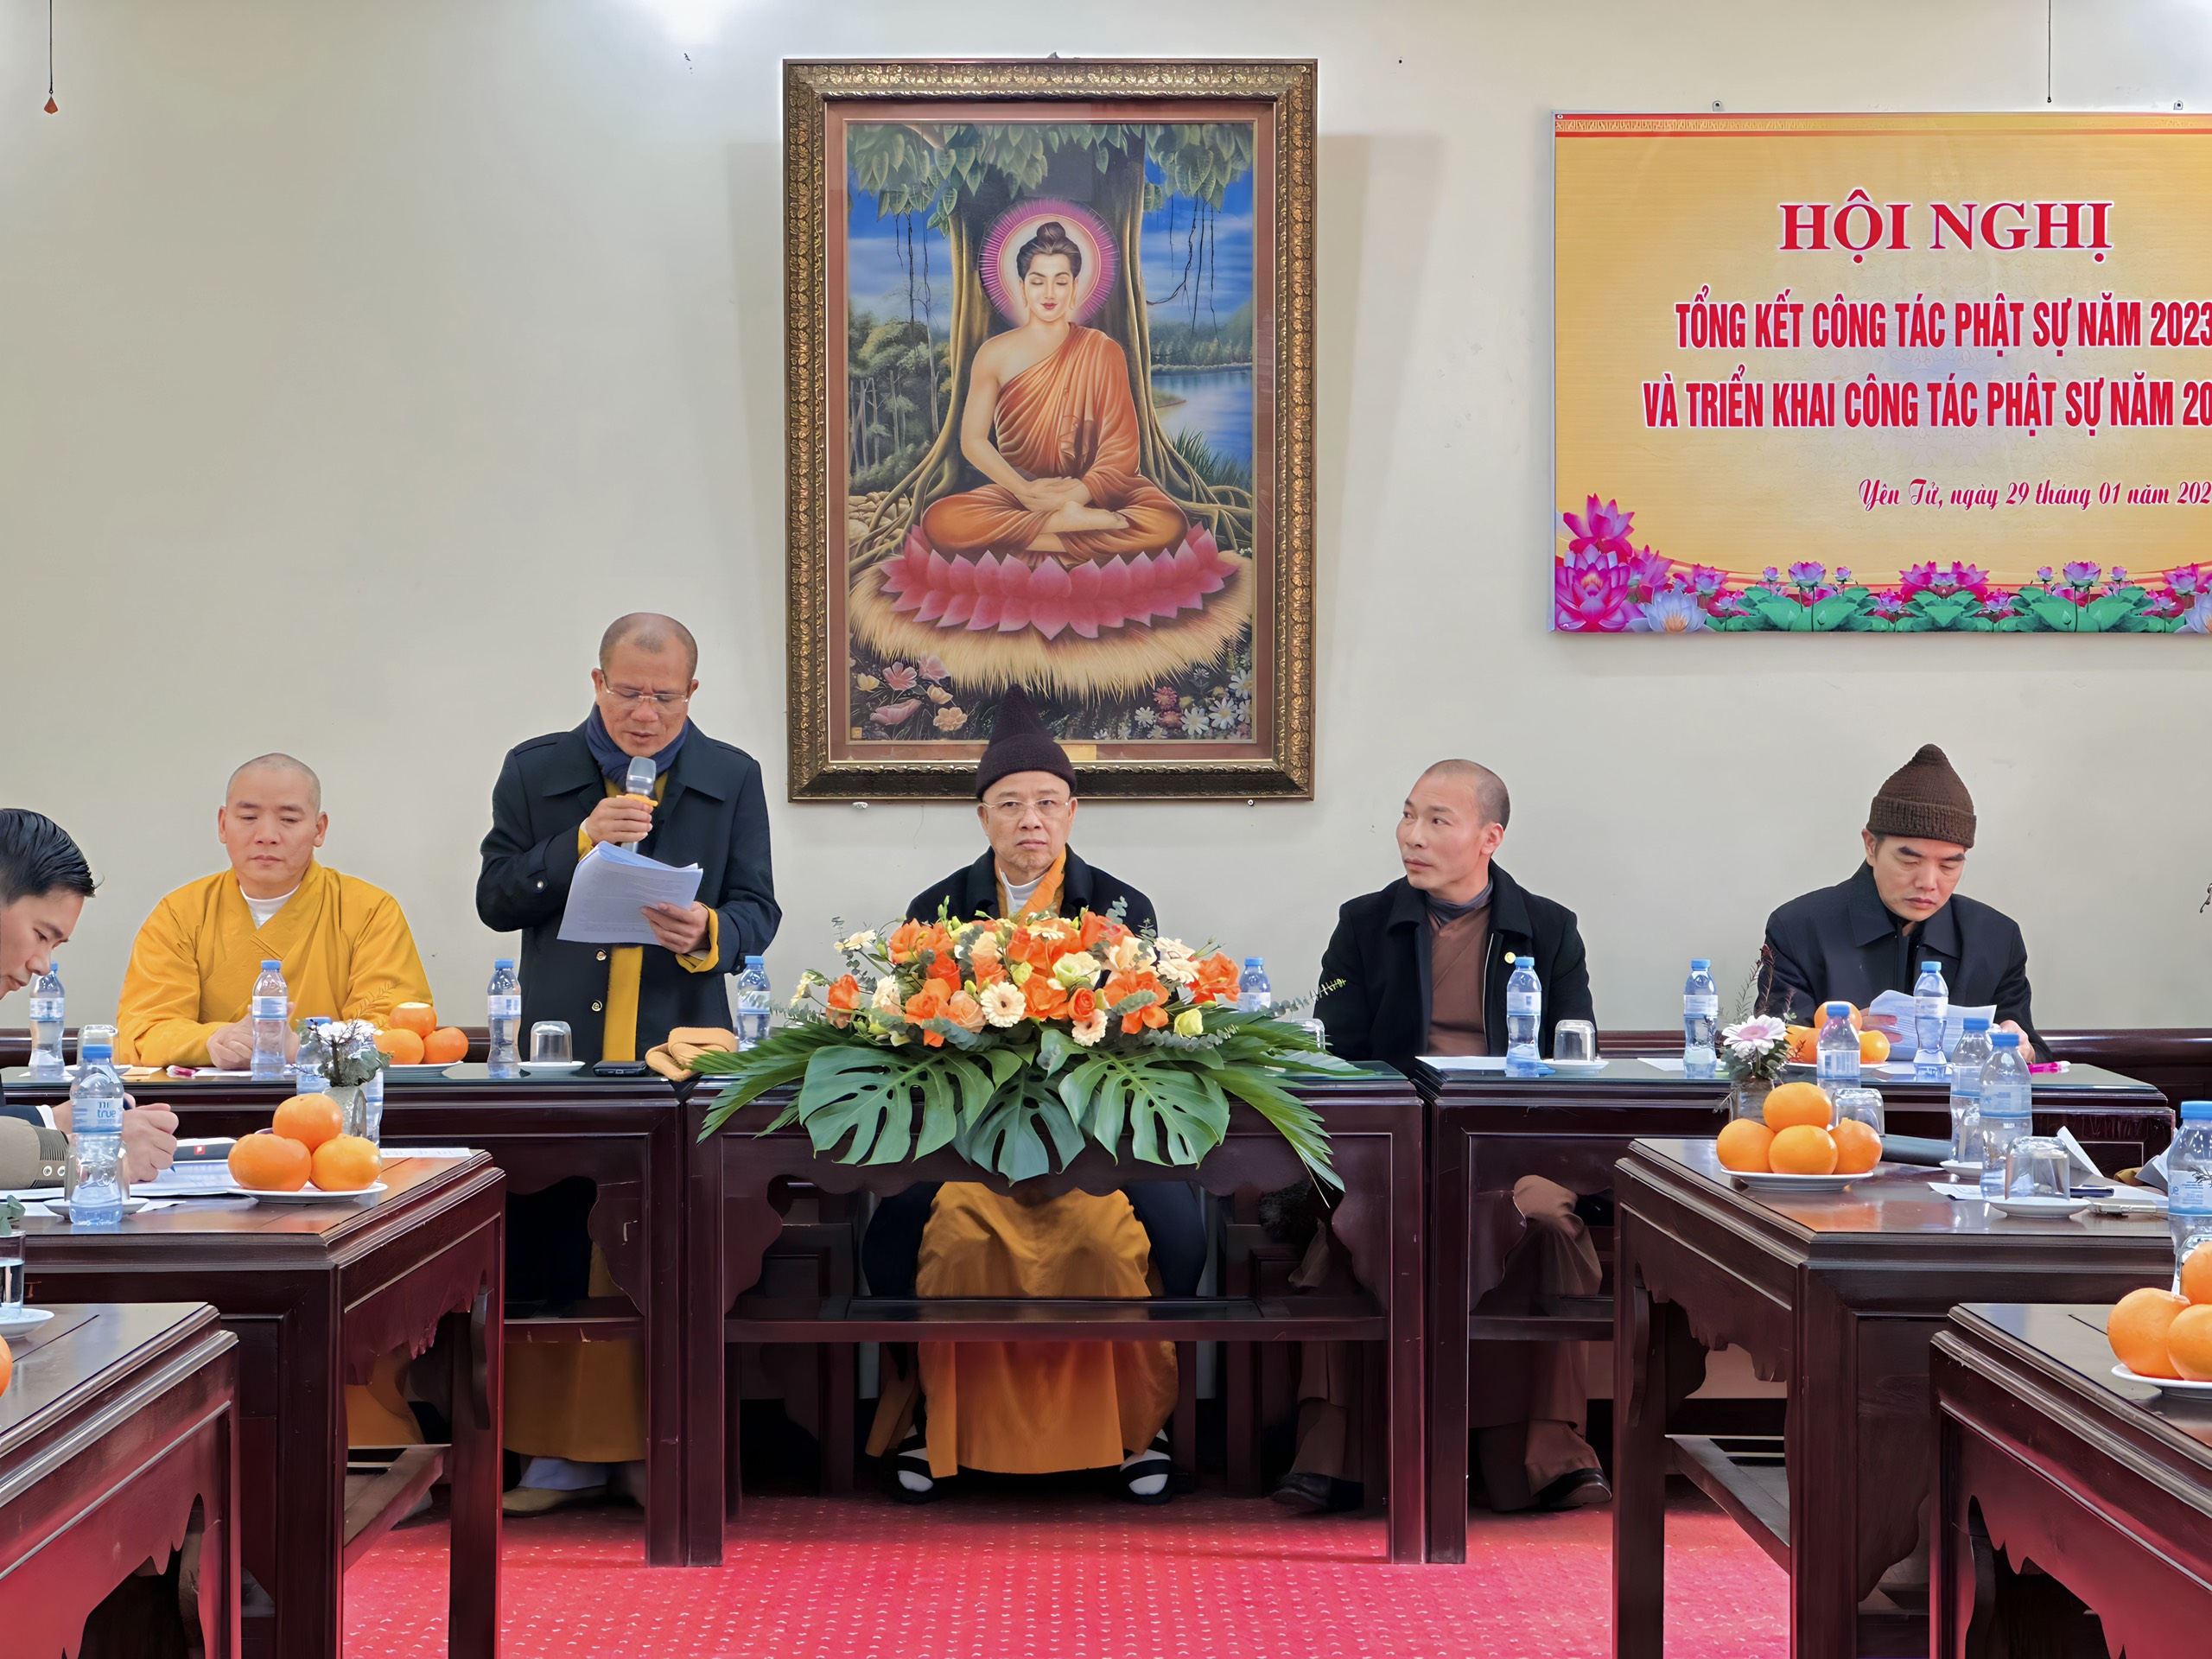 Ban Trị sự Phật giáo tỉnh Quảng Ninh họp tổng kết công tác Phật sự năm 2023 và triển khai công tác Phật sự năm 2024 